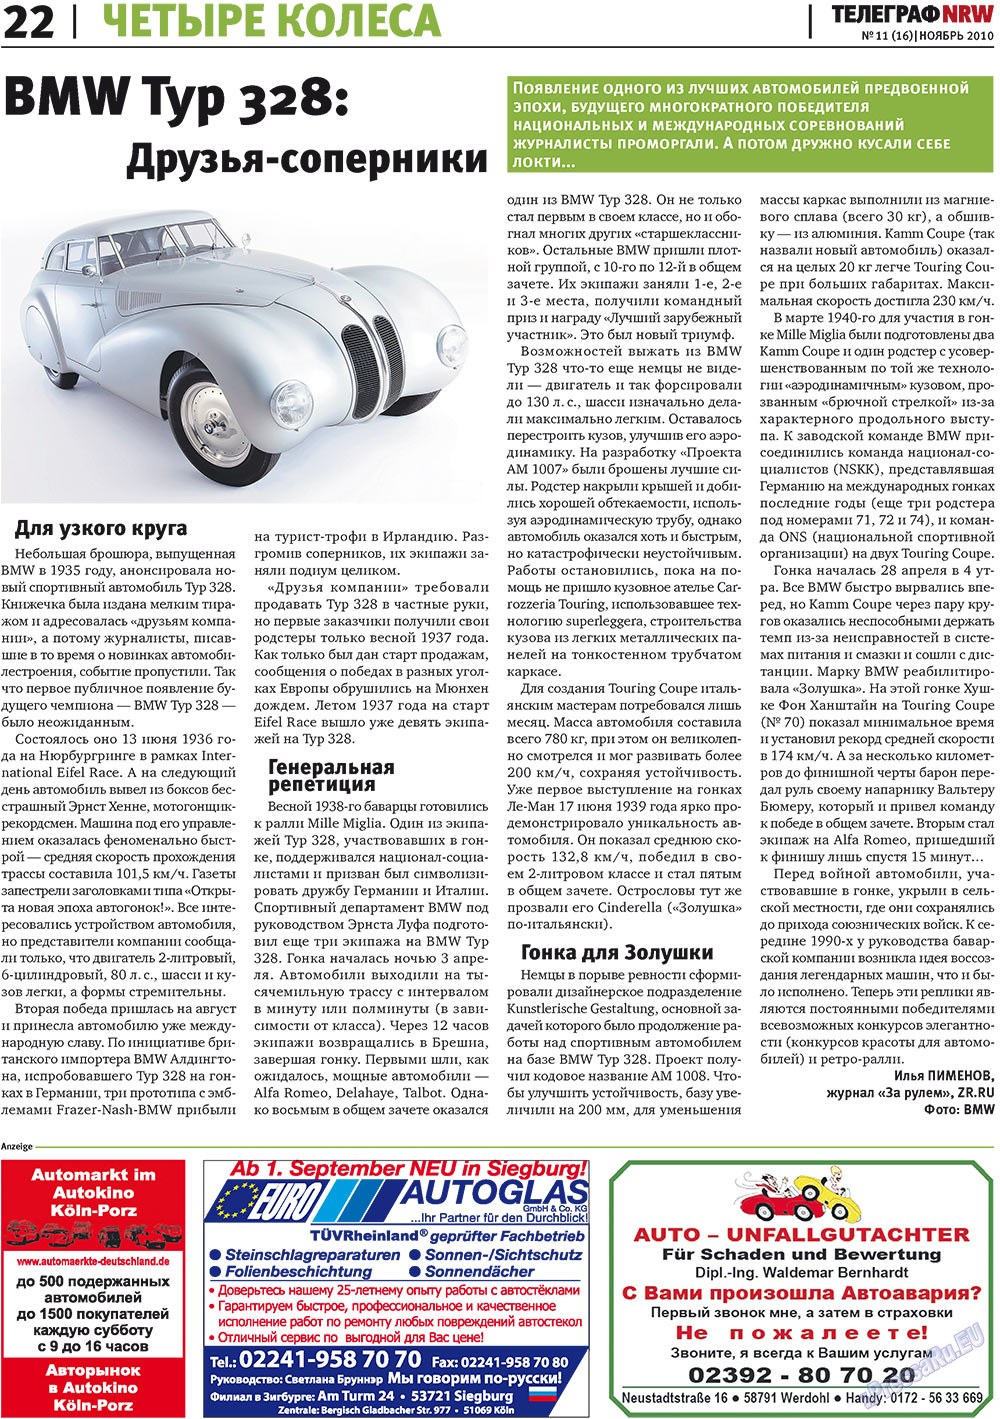 Телеграф NRW (газета). 2010 год, номер 11, стр. 22